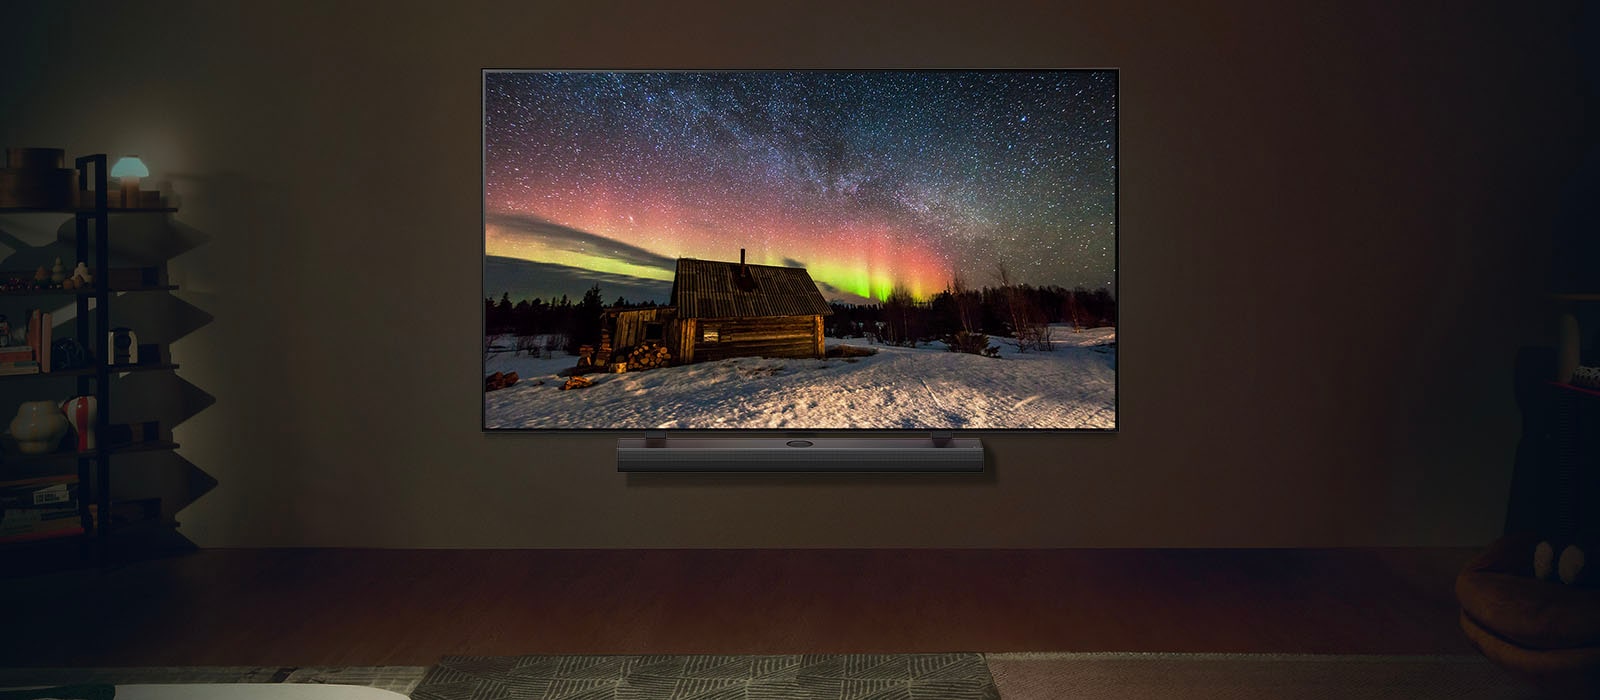 Телевизор LG TV и звуковая панель LG Soundbar в современном жилом пространстве в ночное время. Изображение северного сияния на экране отображается с идеальным уровнем яркости.